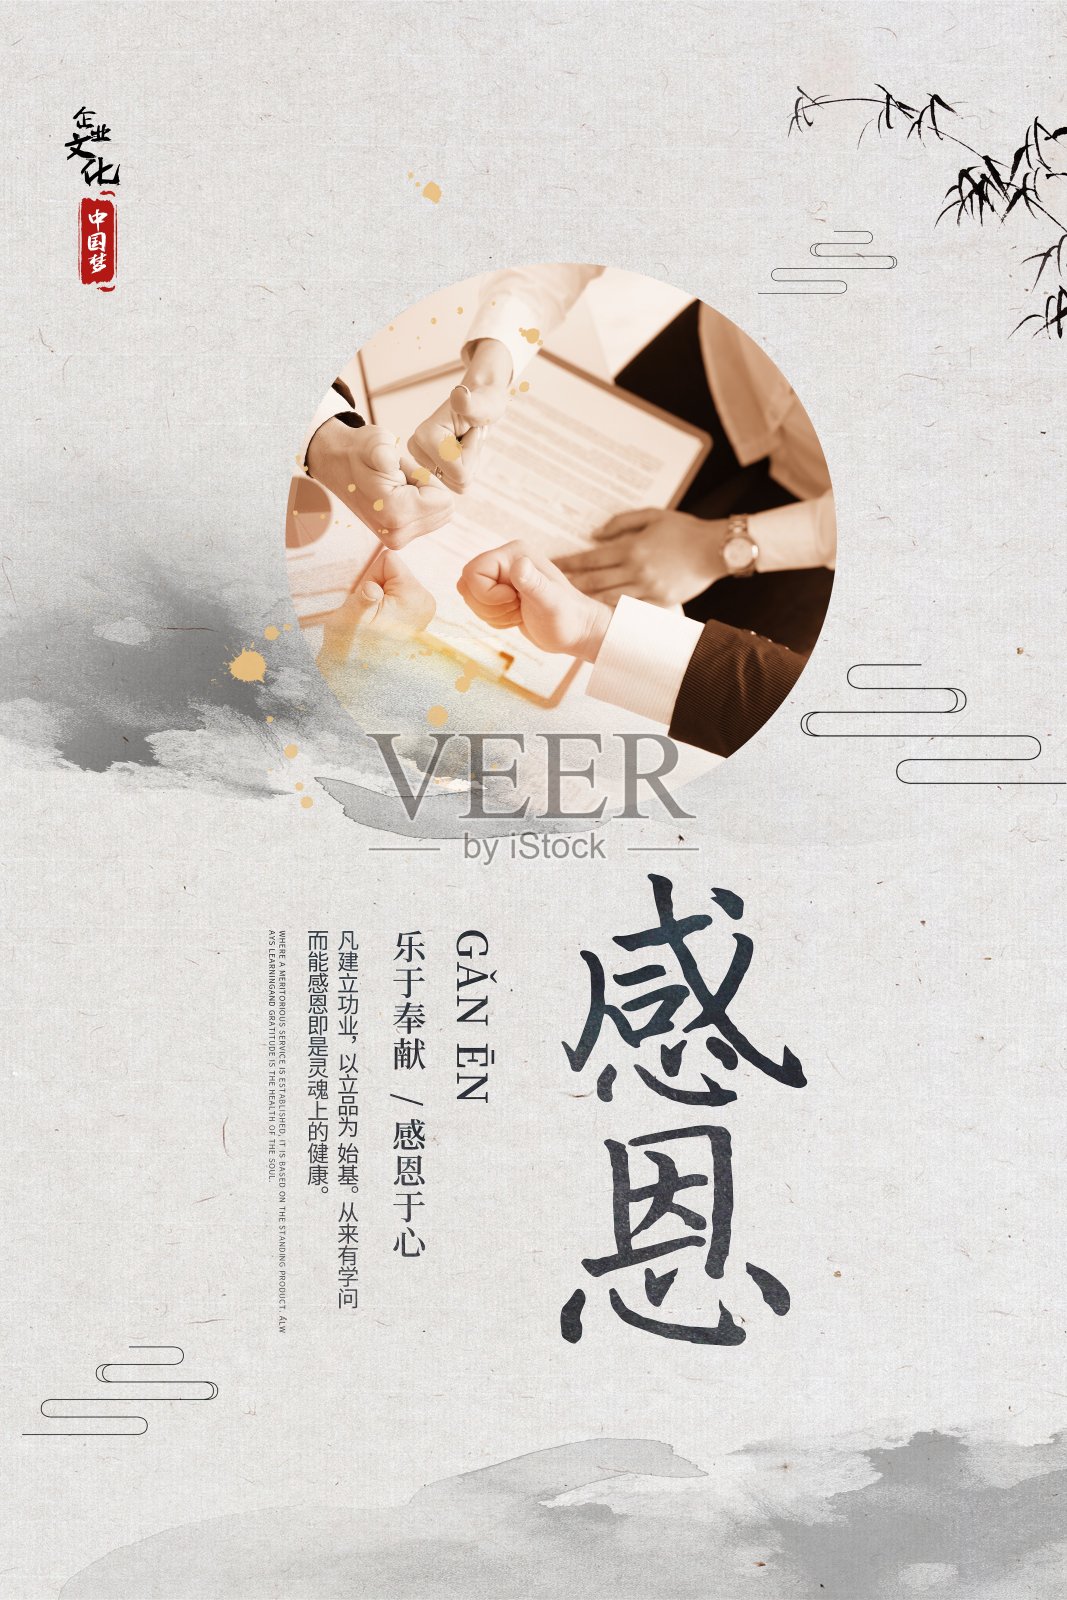 中国风企业文化感恩海报设计模板素材